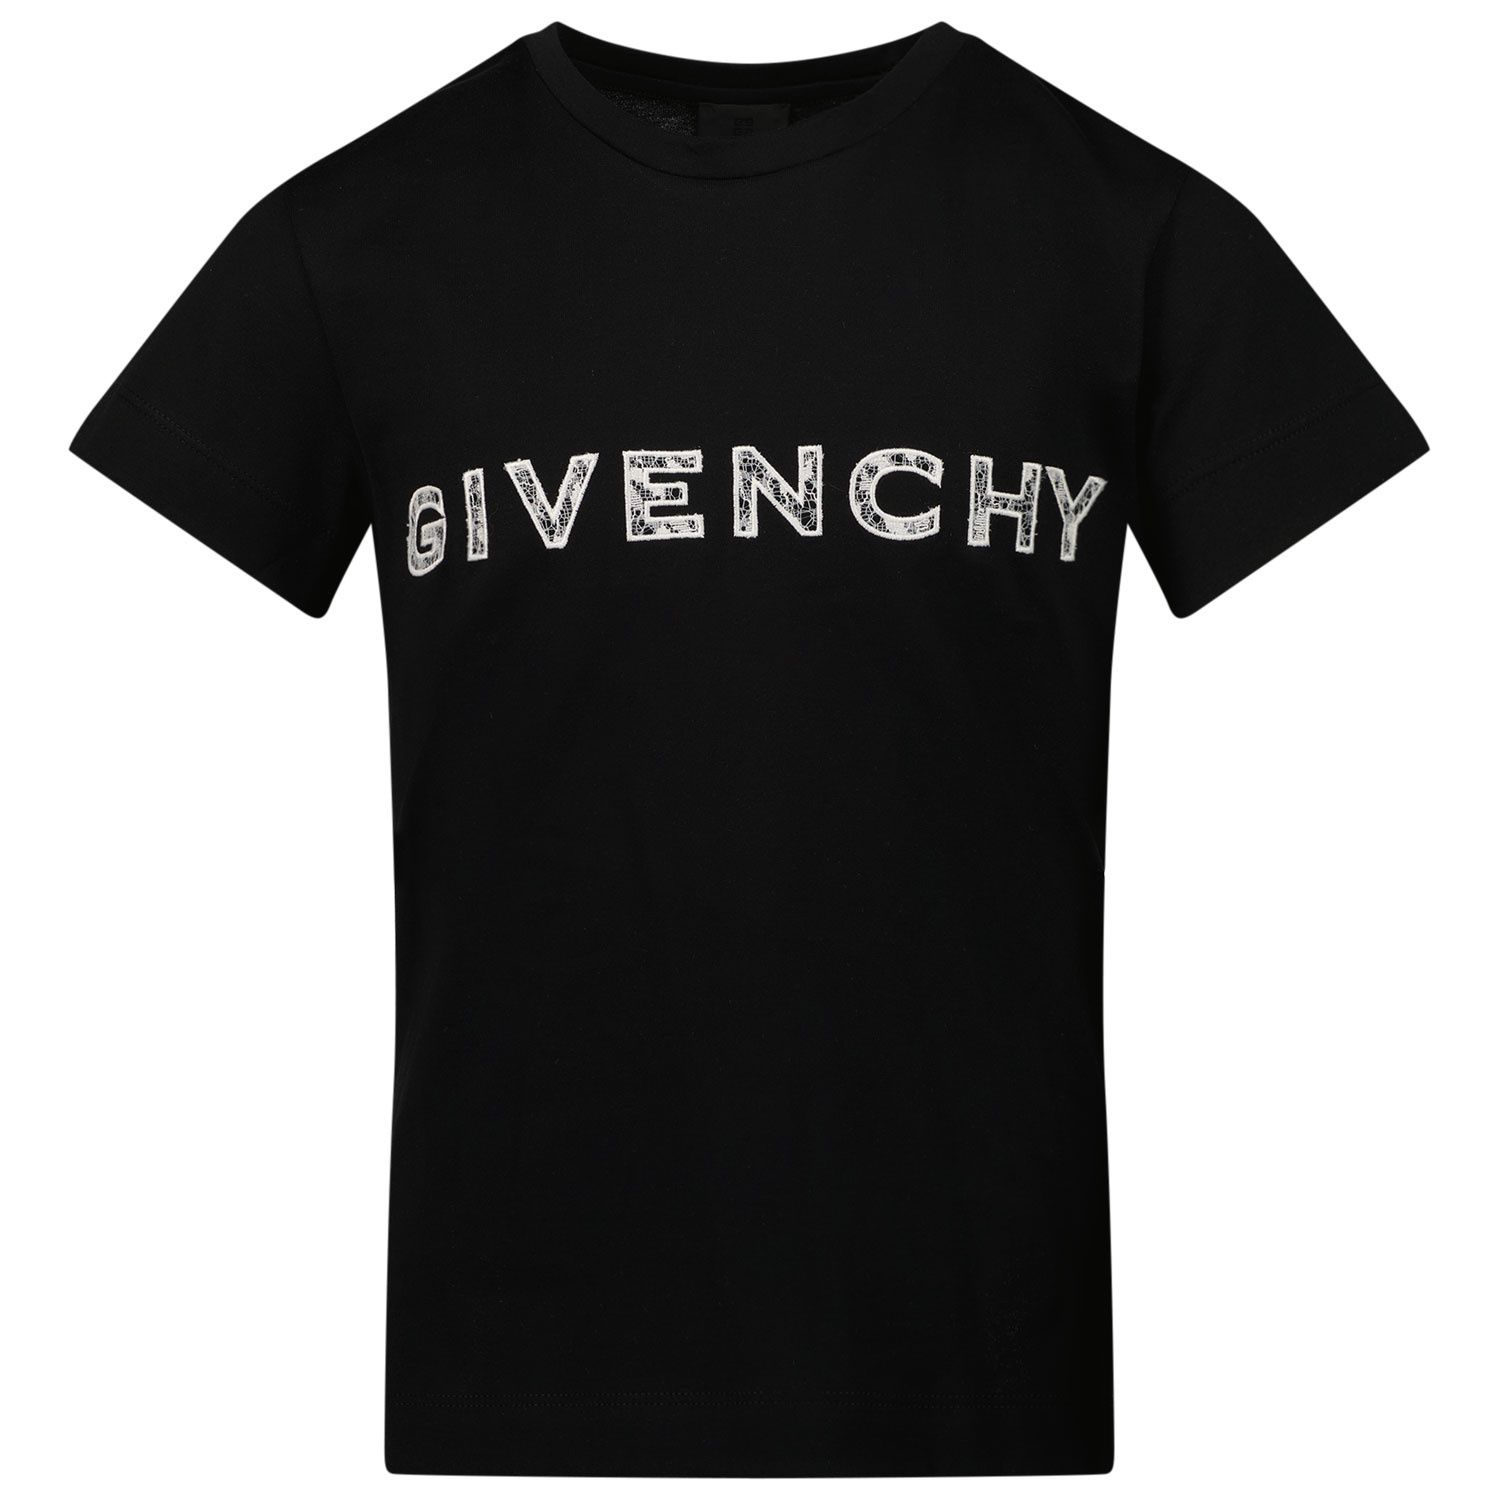 Bild von Givenchy H15246 Kindershirt Schwarz